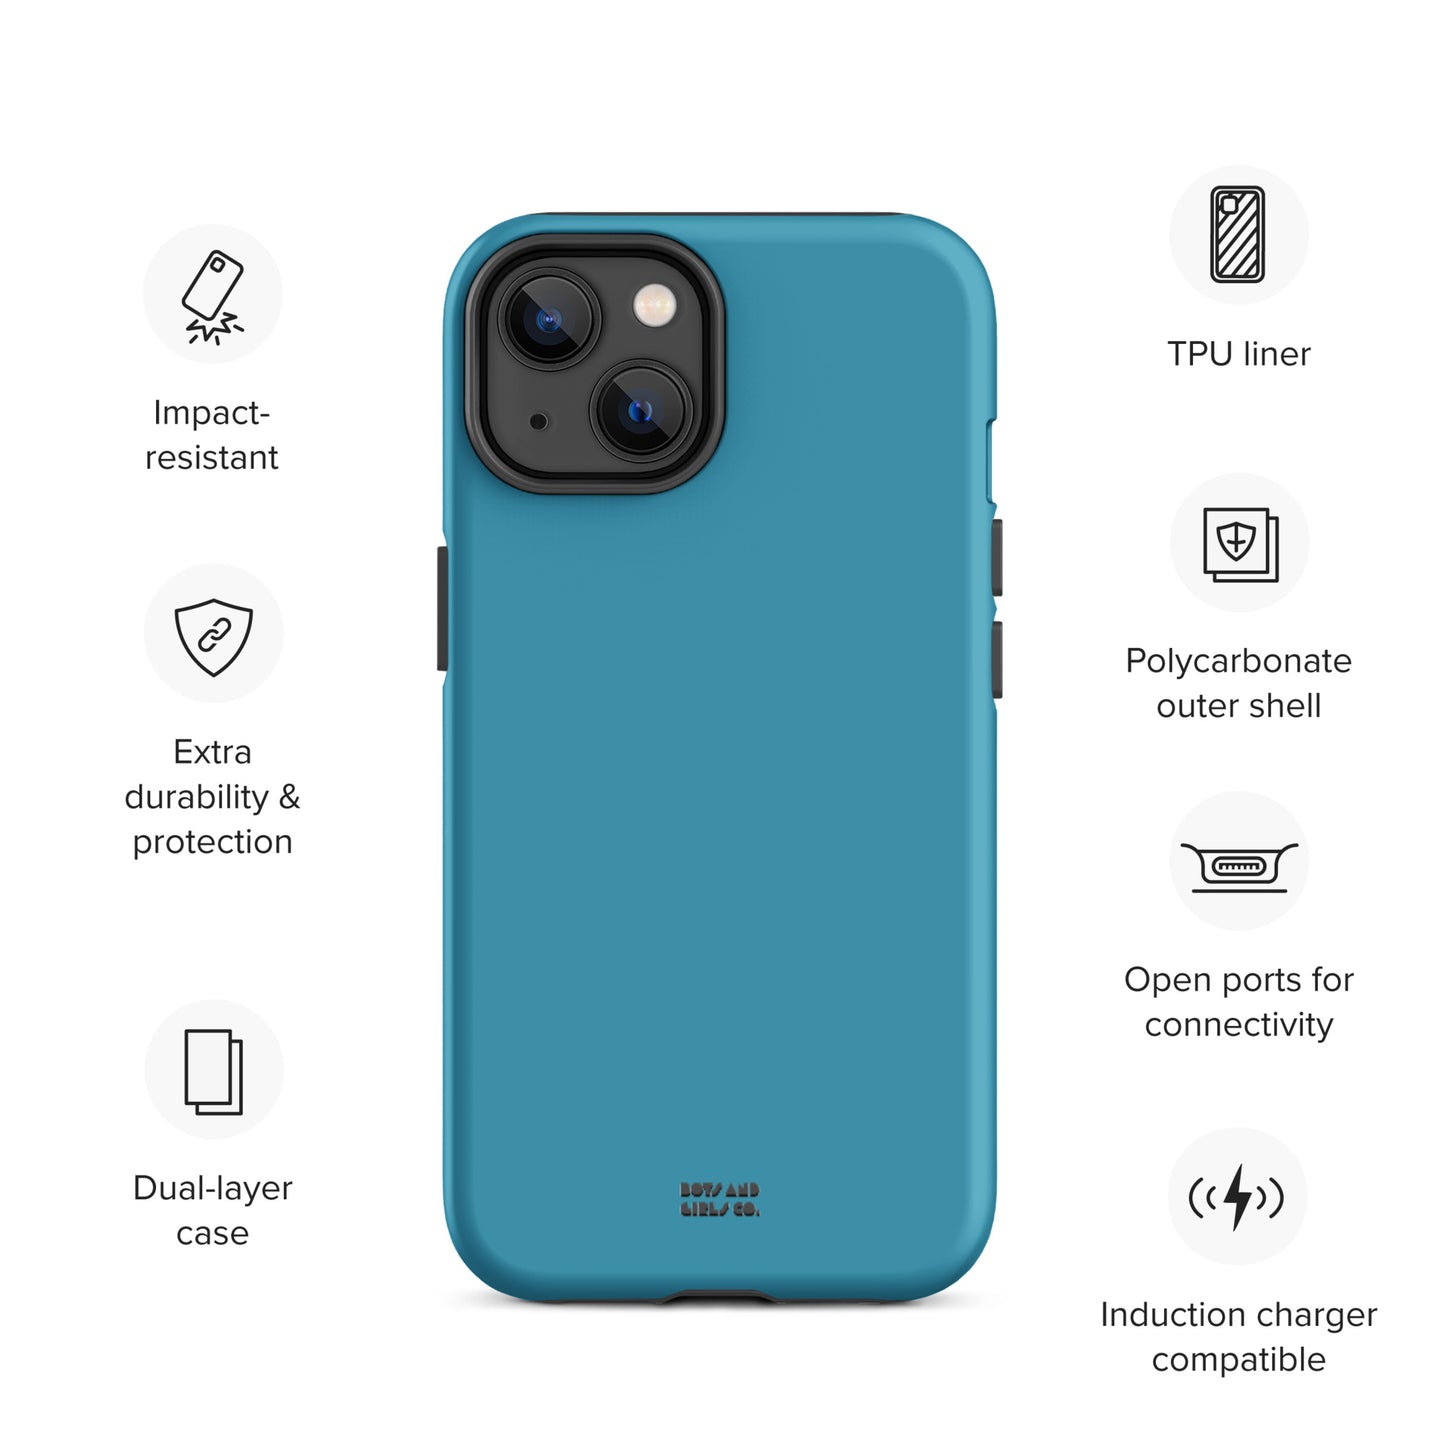 BLUE - Tough iPhone case